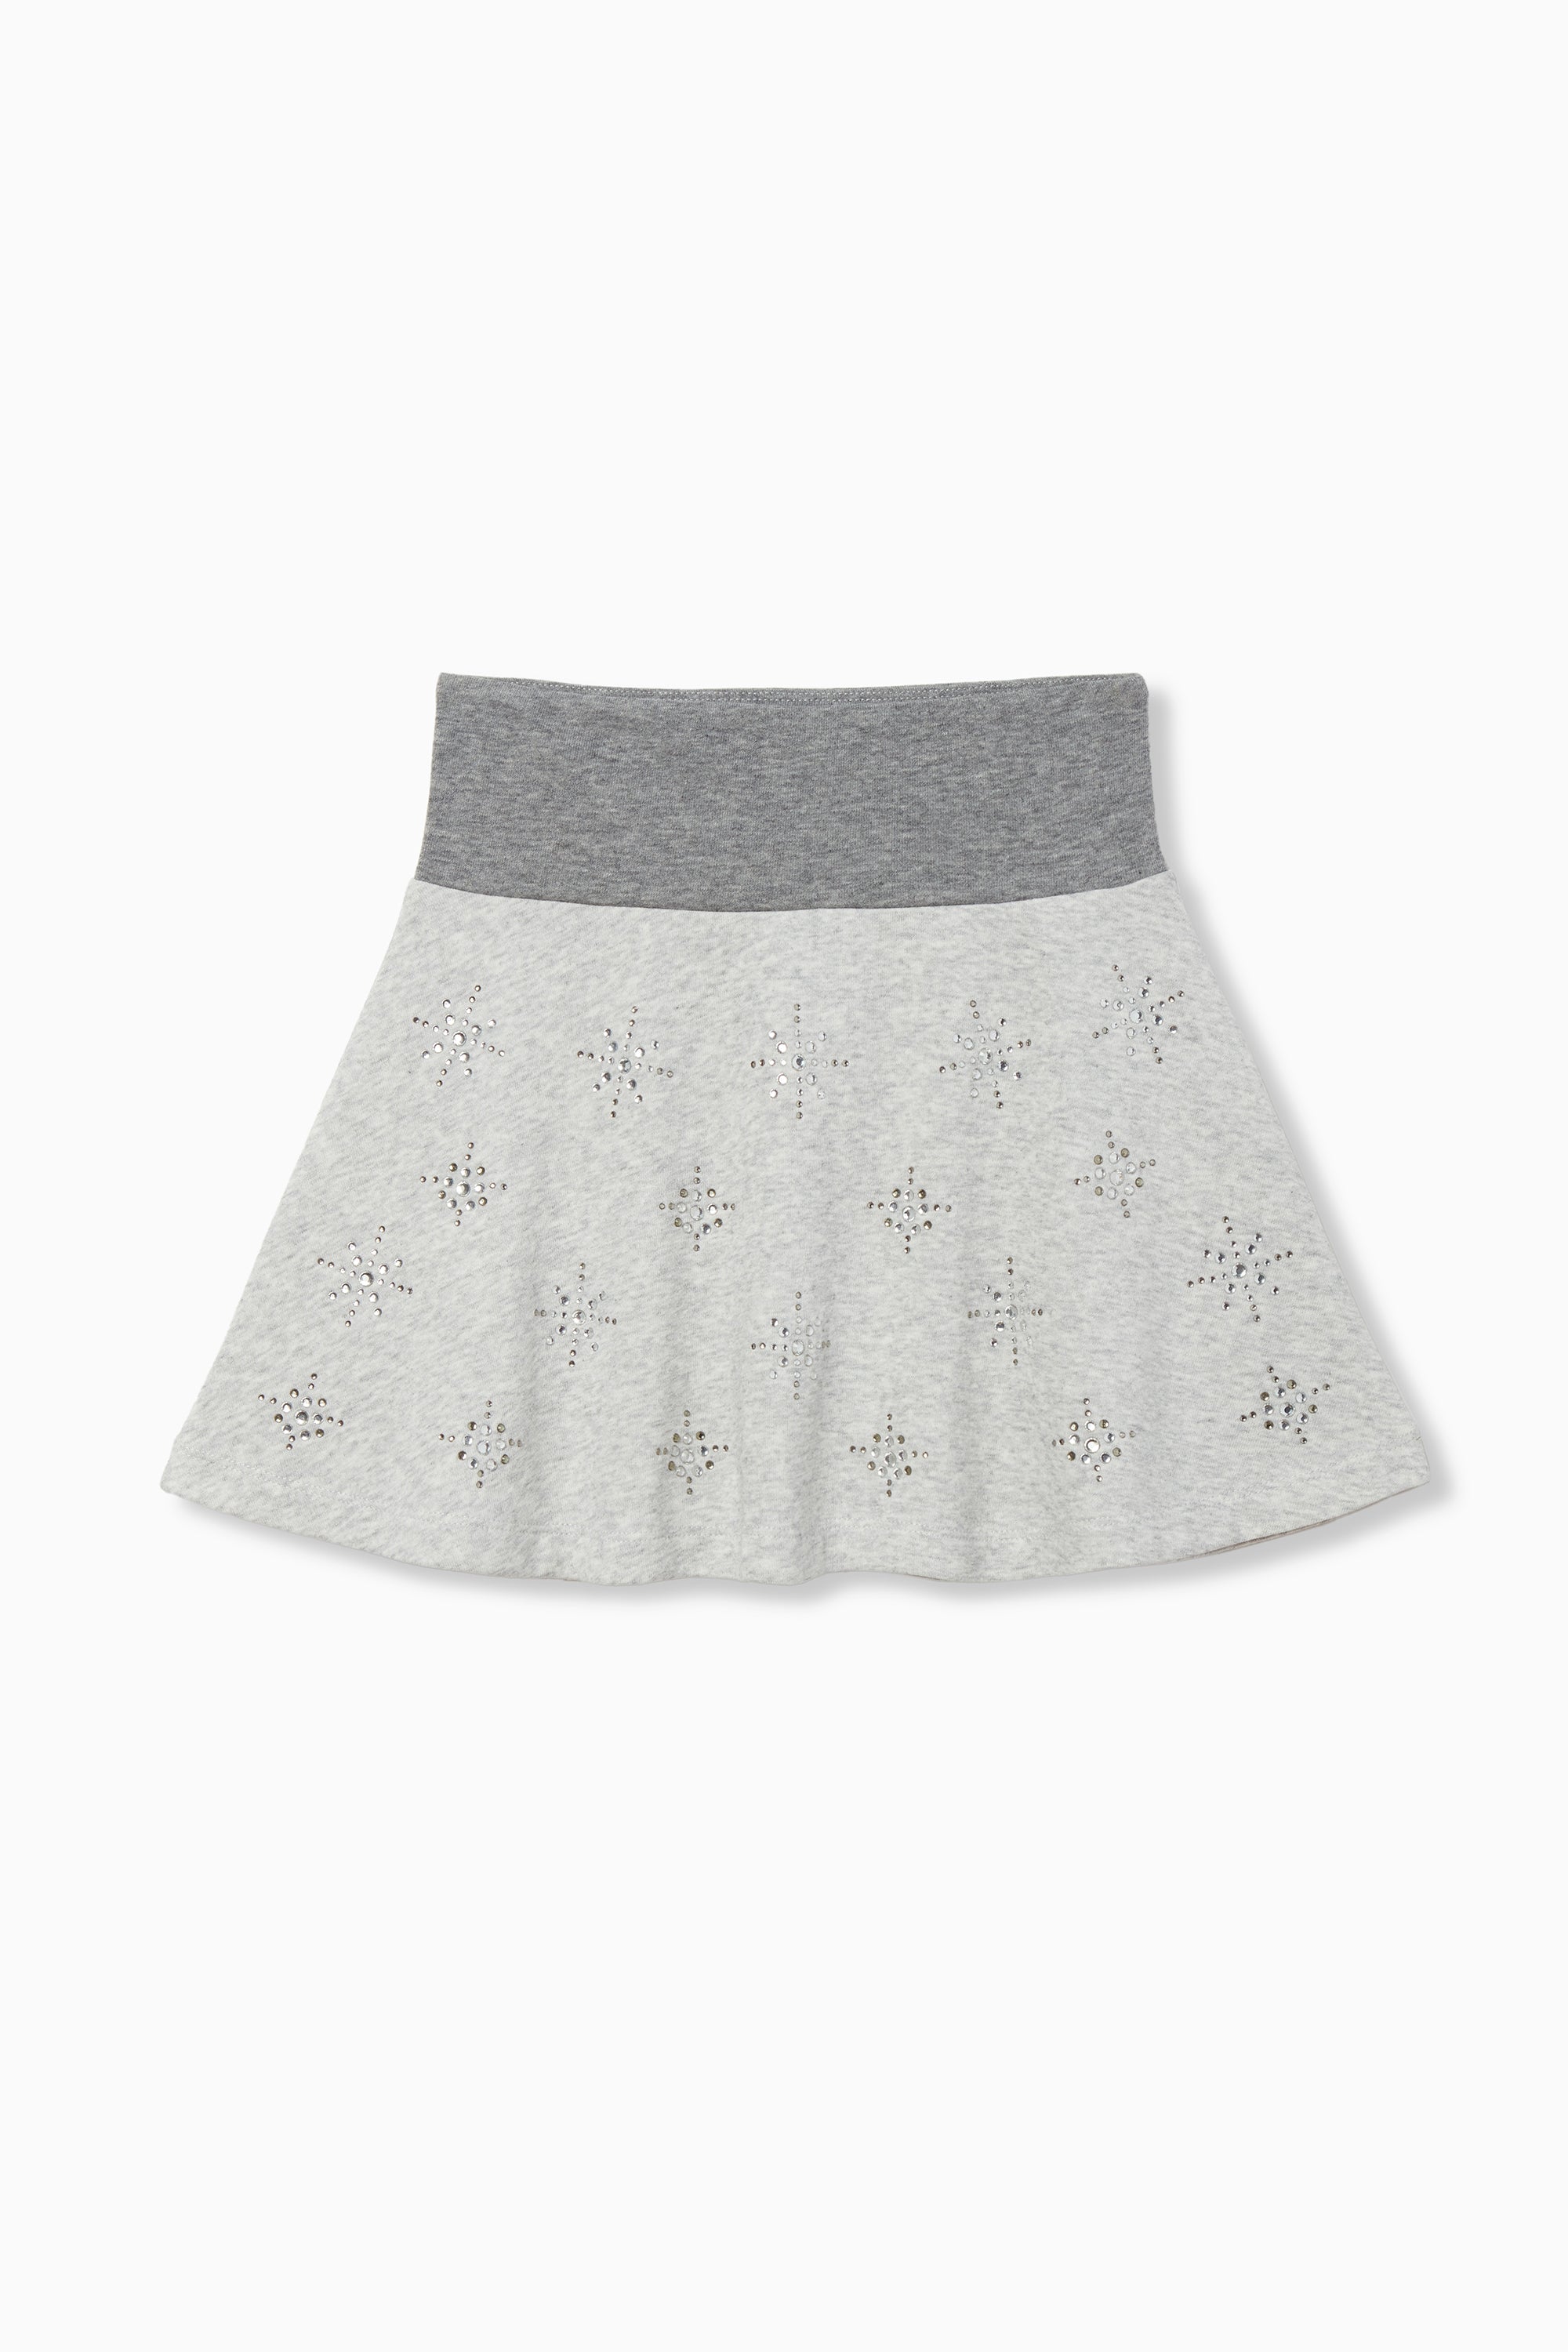 KLART Girl/Women's Pleated Skirt/Skater Skirt/Tennis Skirt/Checkered Tennis  Skirt/ Checked Skirt/Mini Skirt/